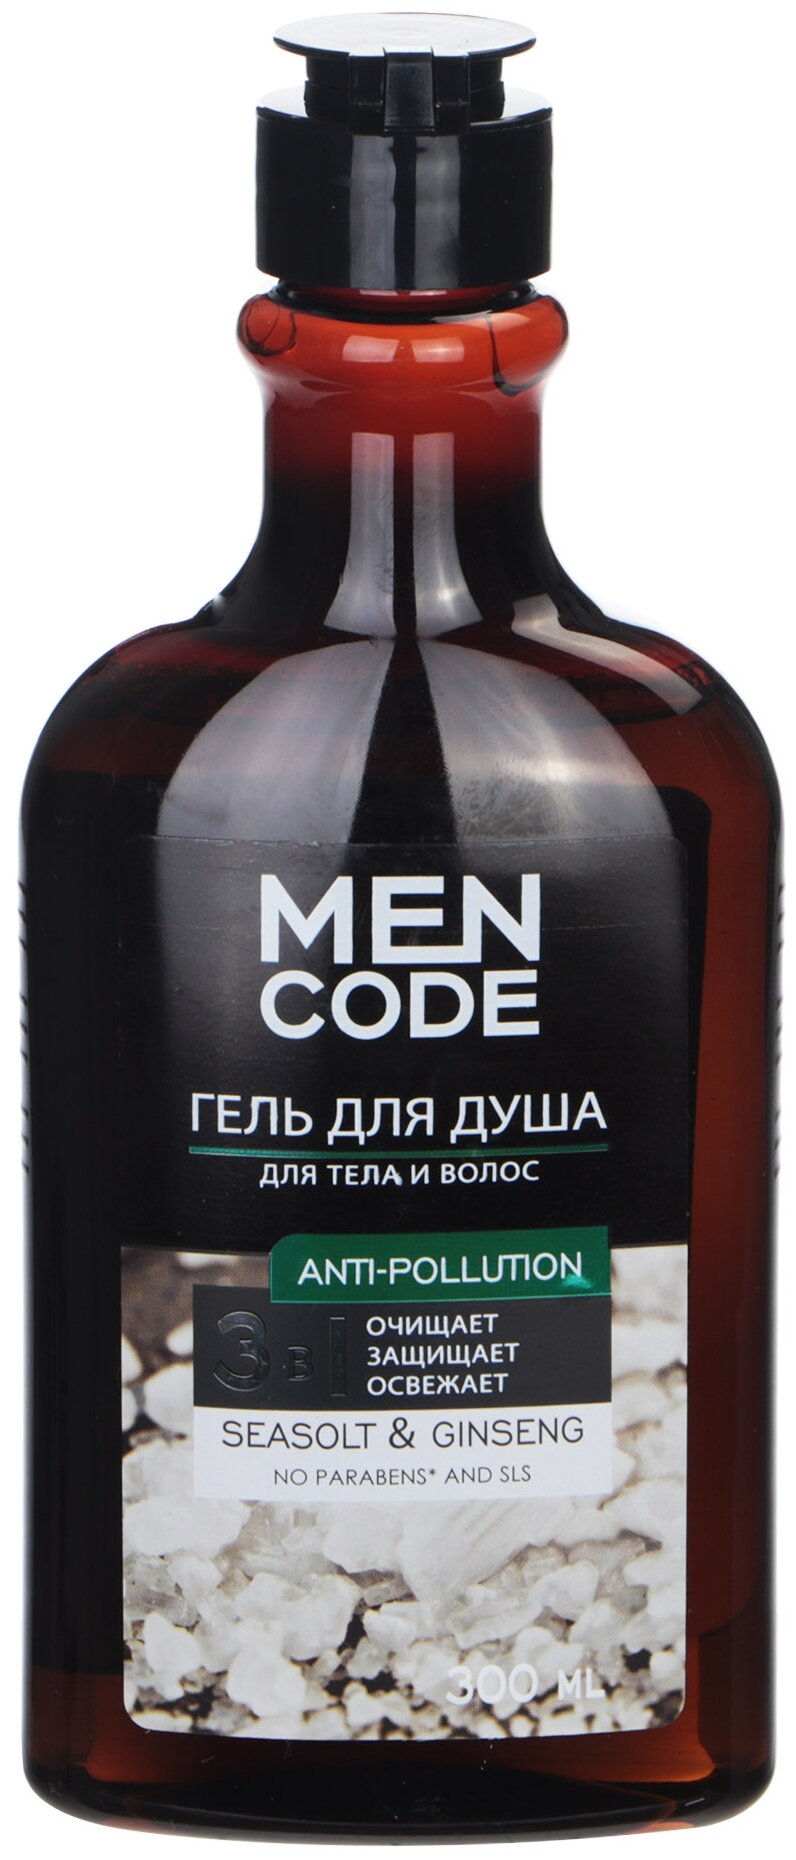 Гель для душа Men Code Anti-Pollution, с экстрактами женьшеня и морской соли, 300 мл